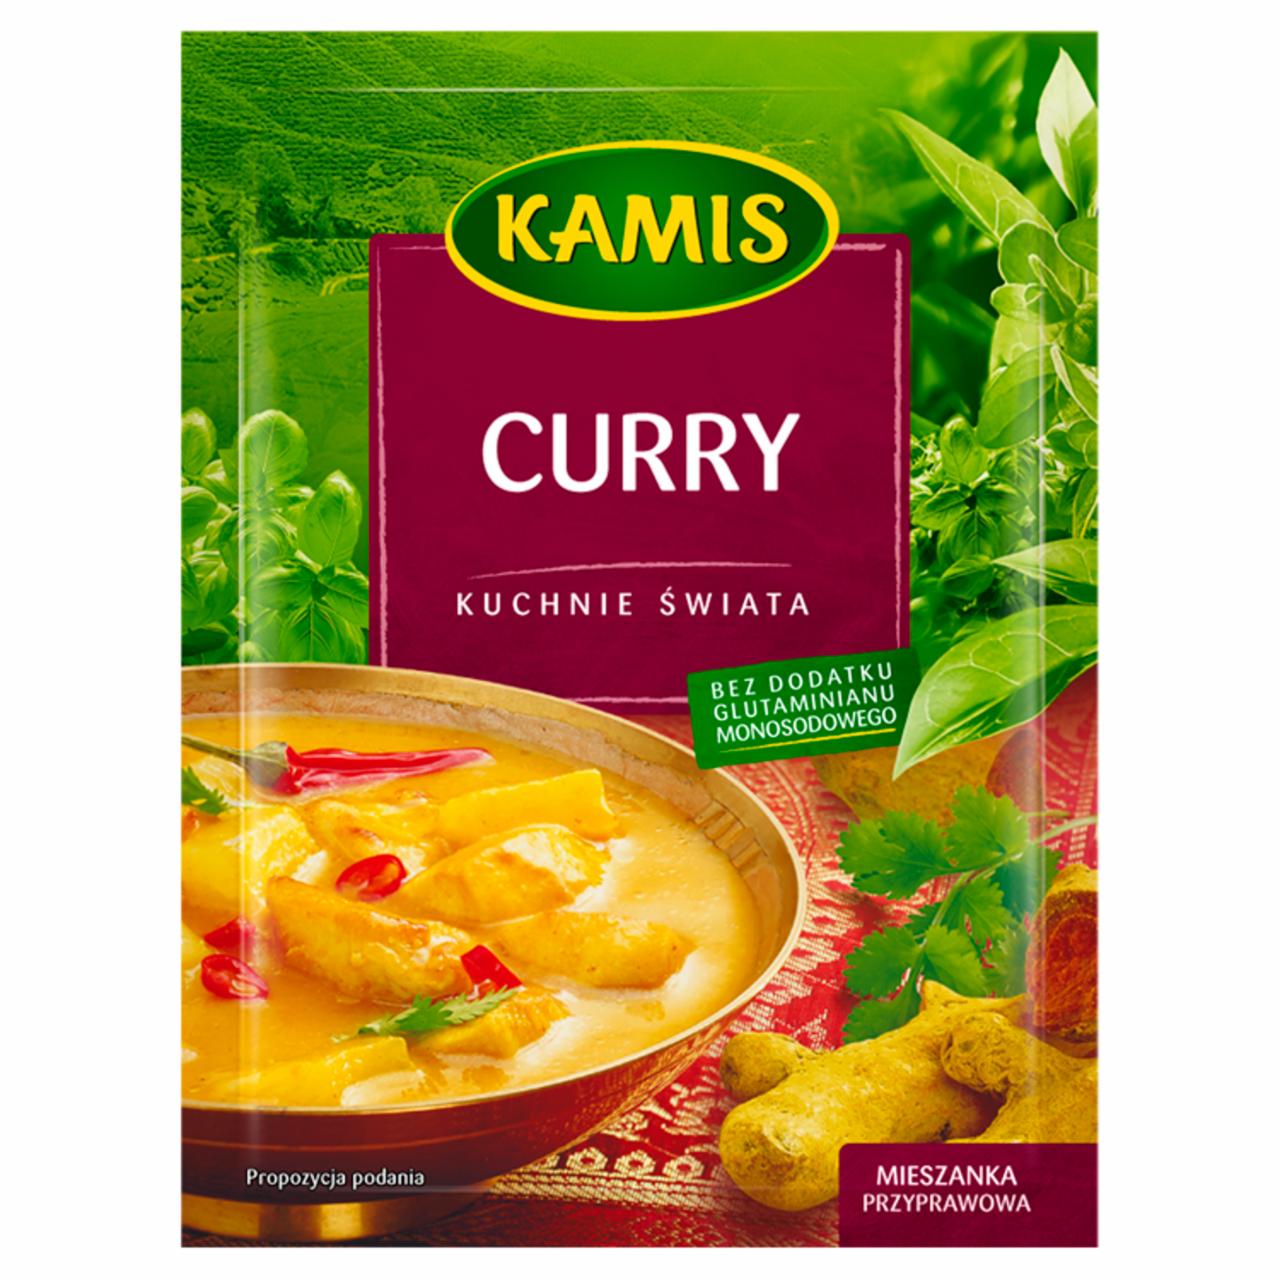 Zdjęcia - Kuchnie świata Curry Mieszanka przyprawowa Kamis